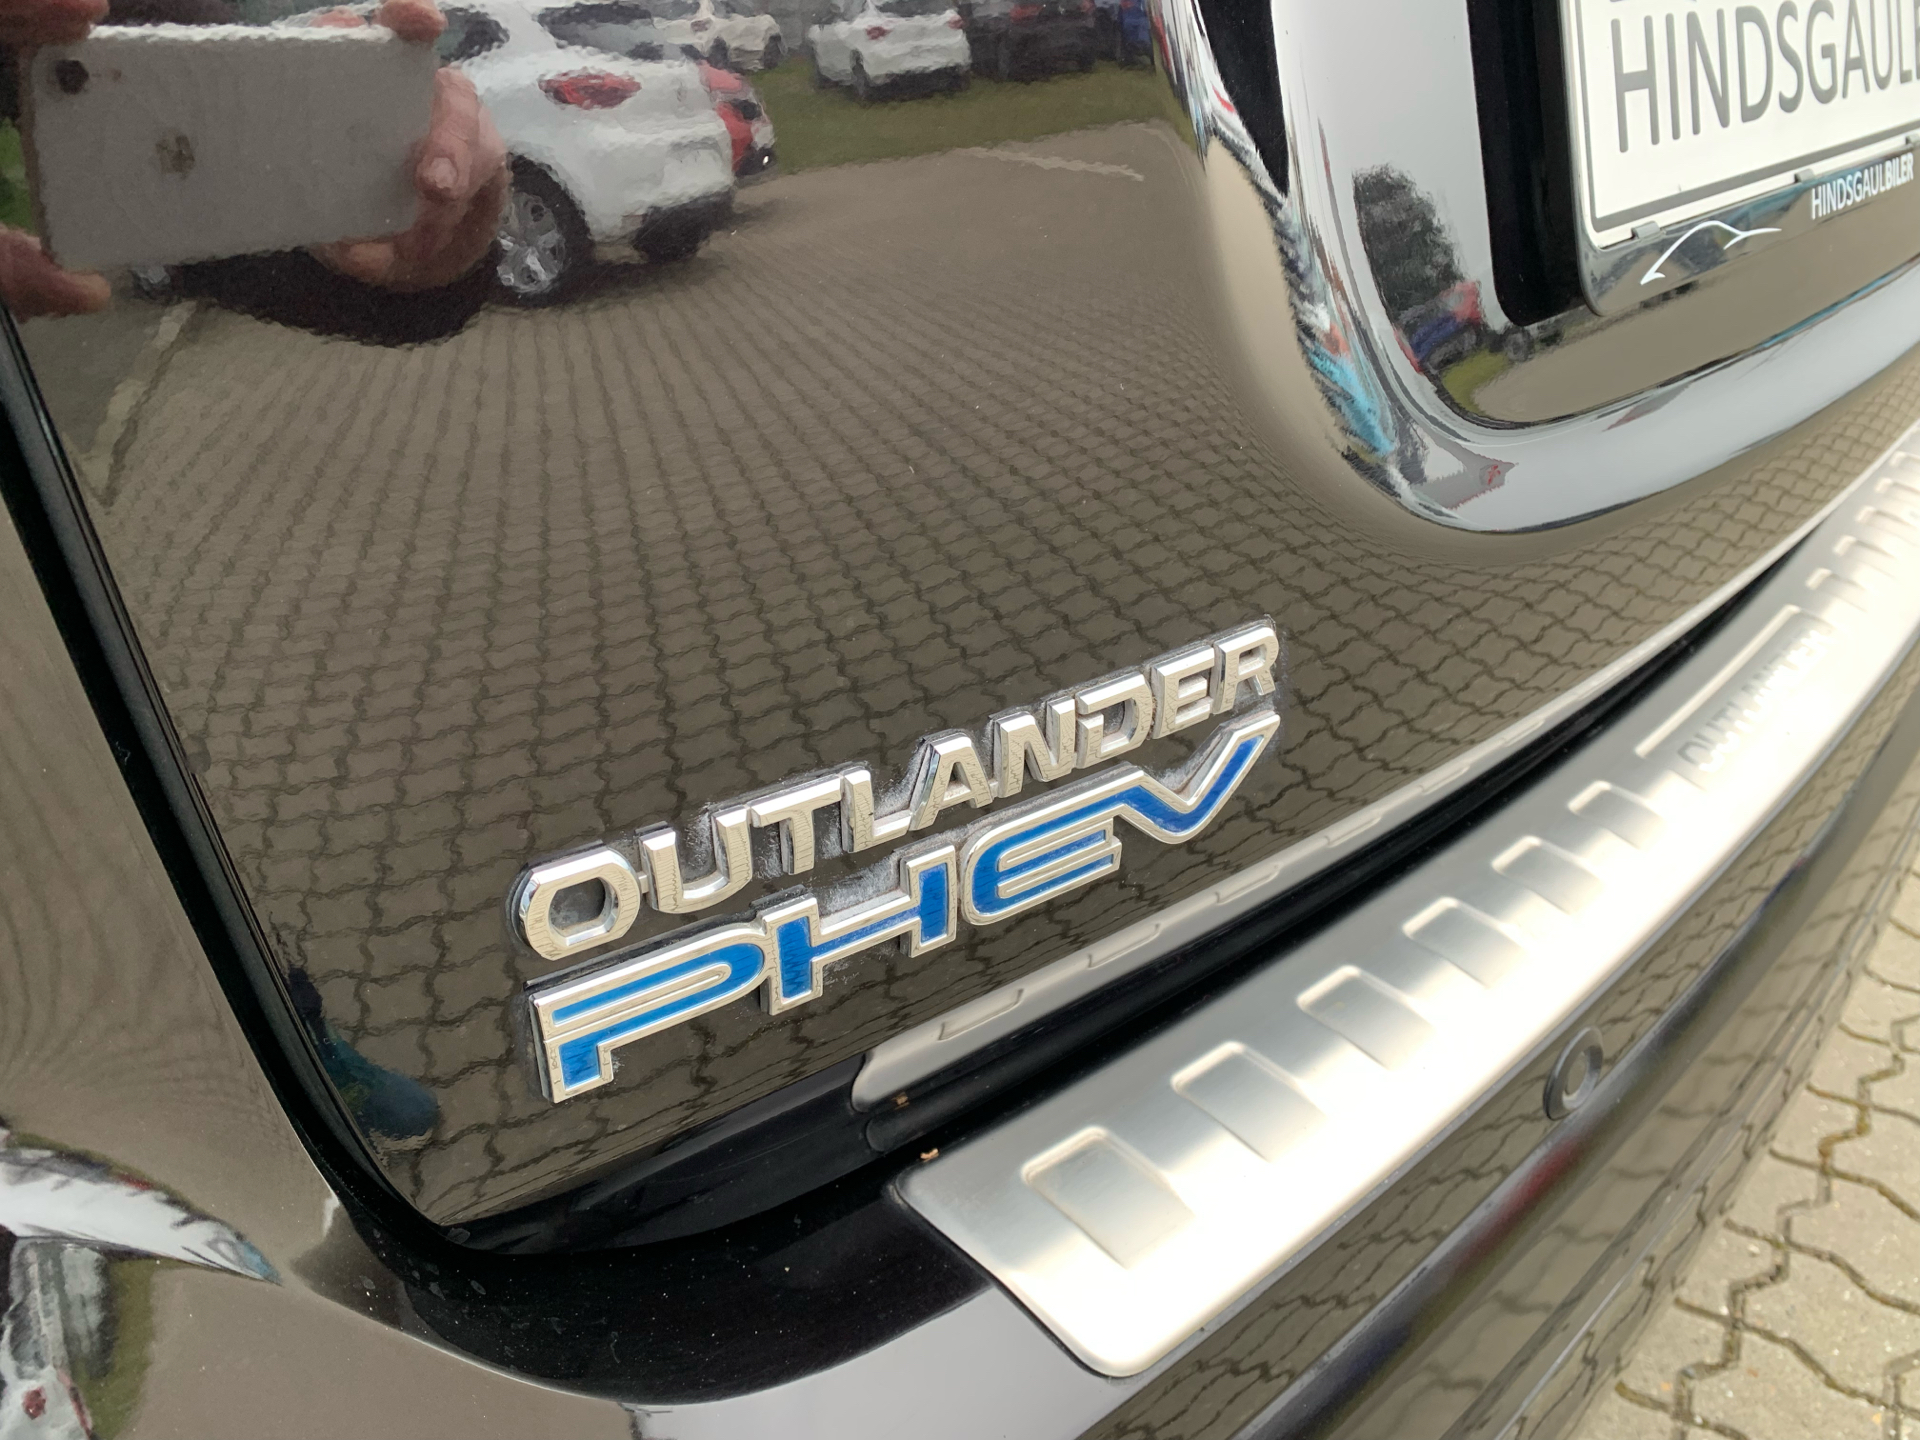 Billede af Mitsubishi Outlander 2,4 PHEV  Plugin-hybrid Instyle S-Edition 4WD 224HK 5d 6g Trinl. Gear